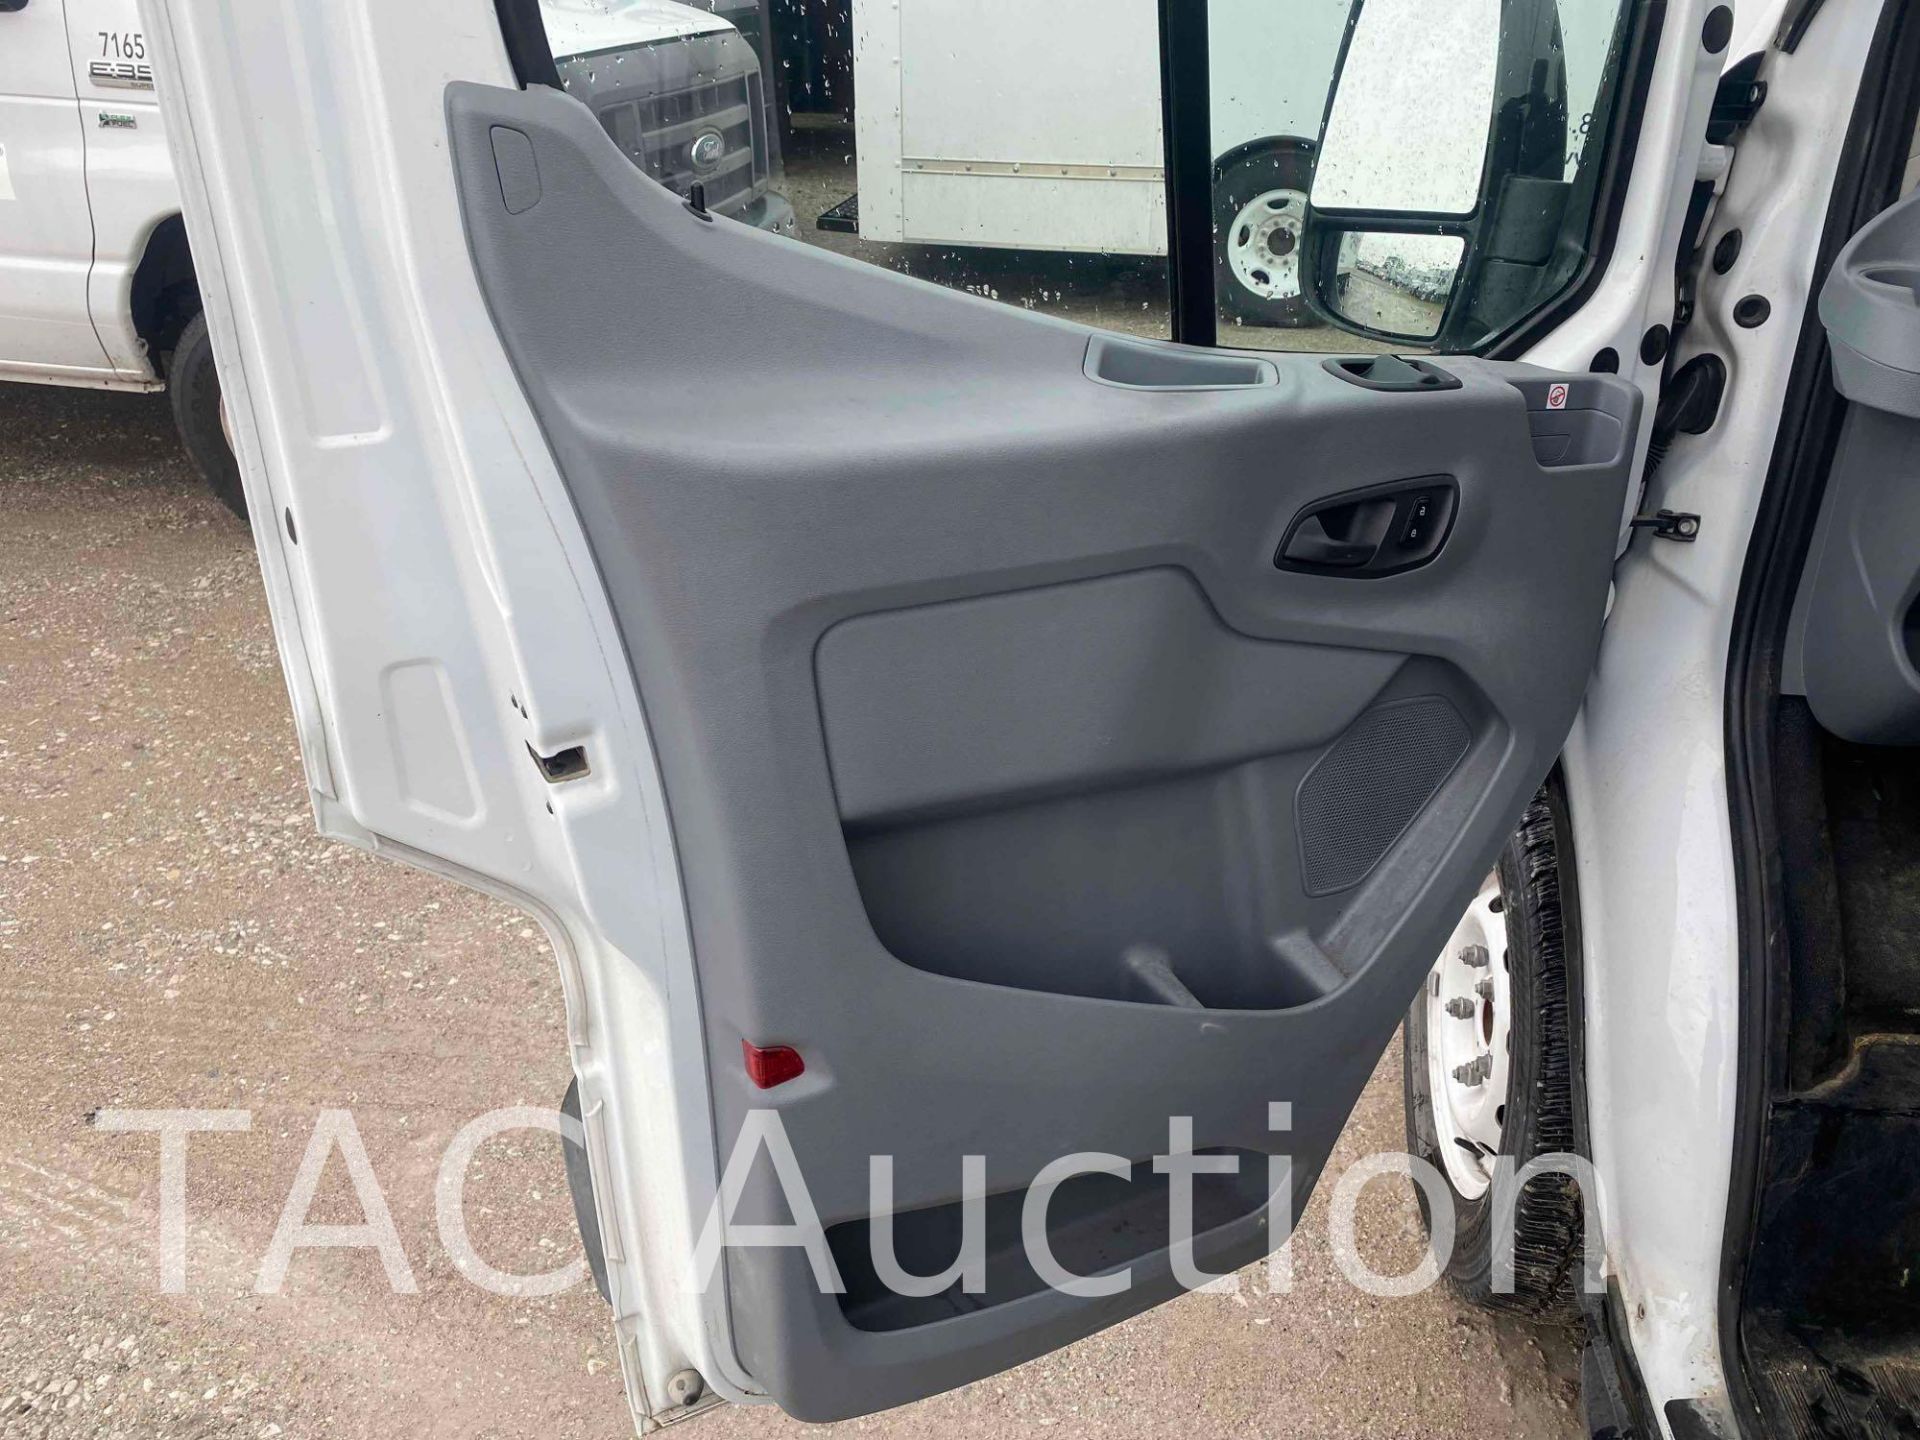 2019 Ford Transit 150 Cargo Van - Image 24 of 42